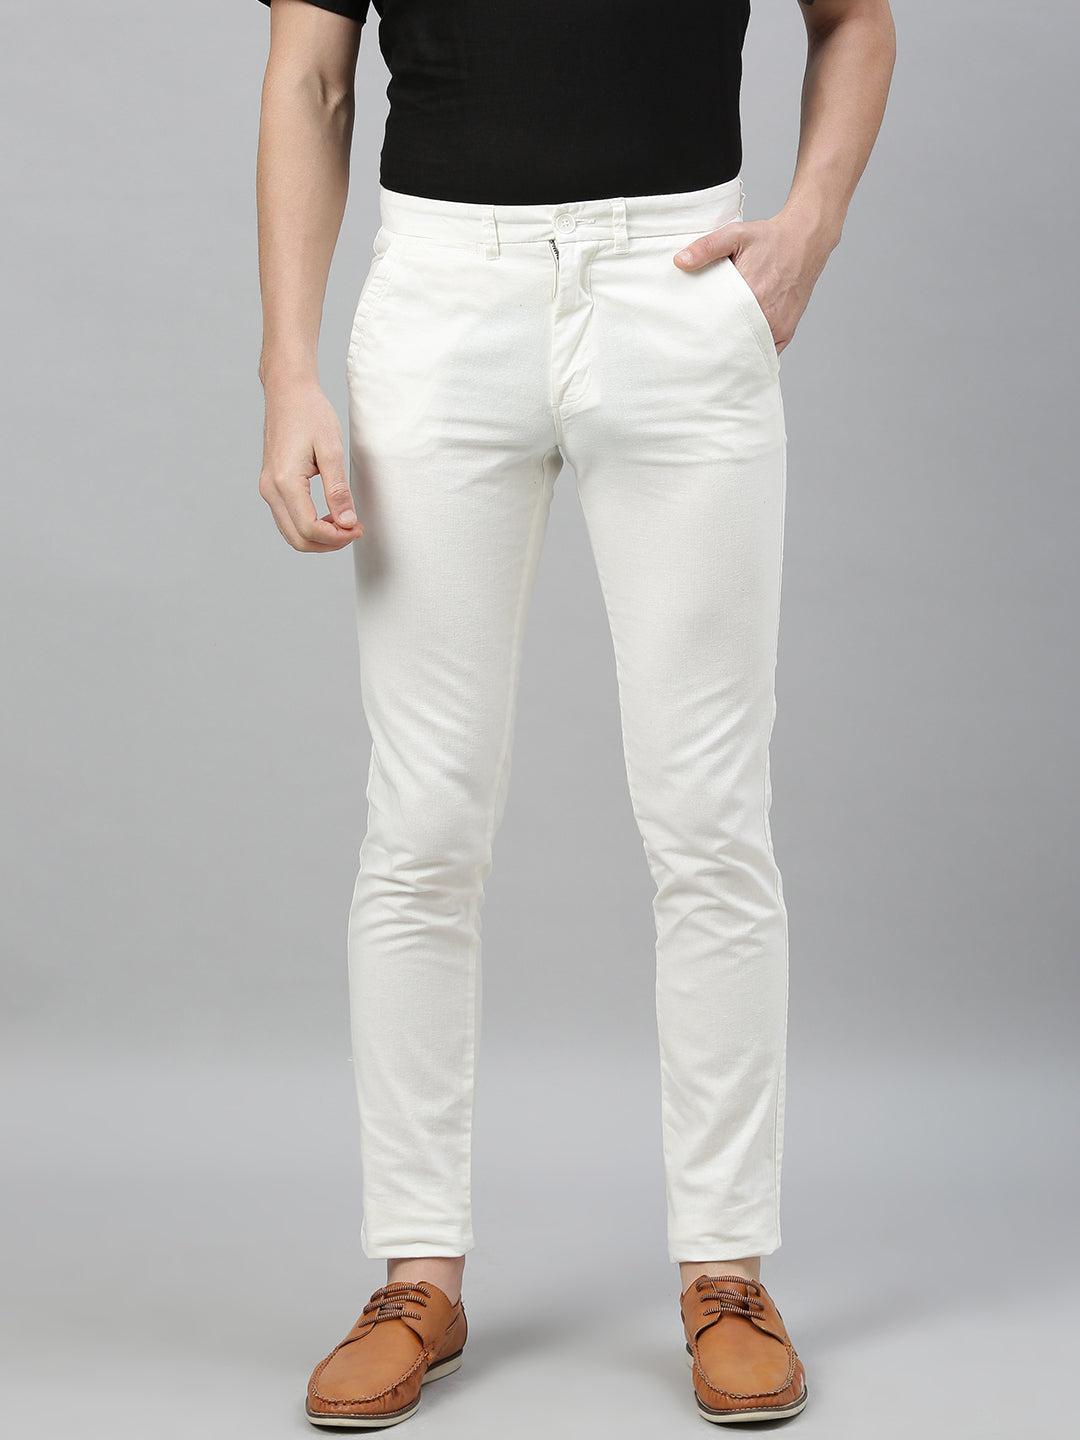 Men's White Cotton Linen Slim Fit Pant